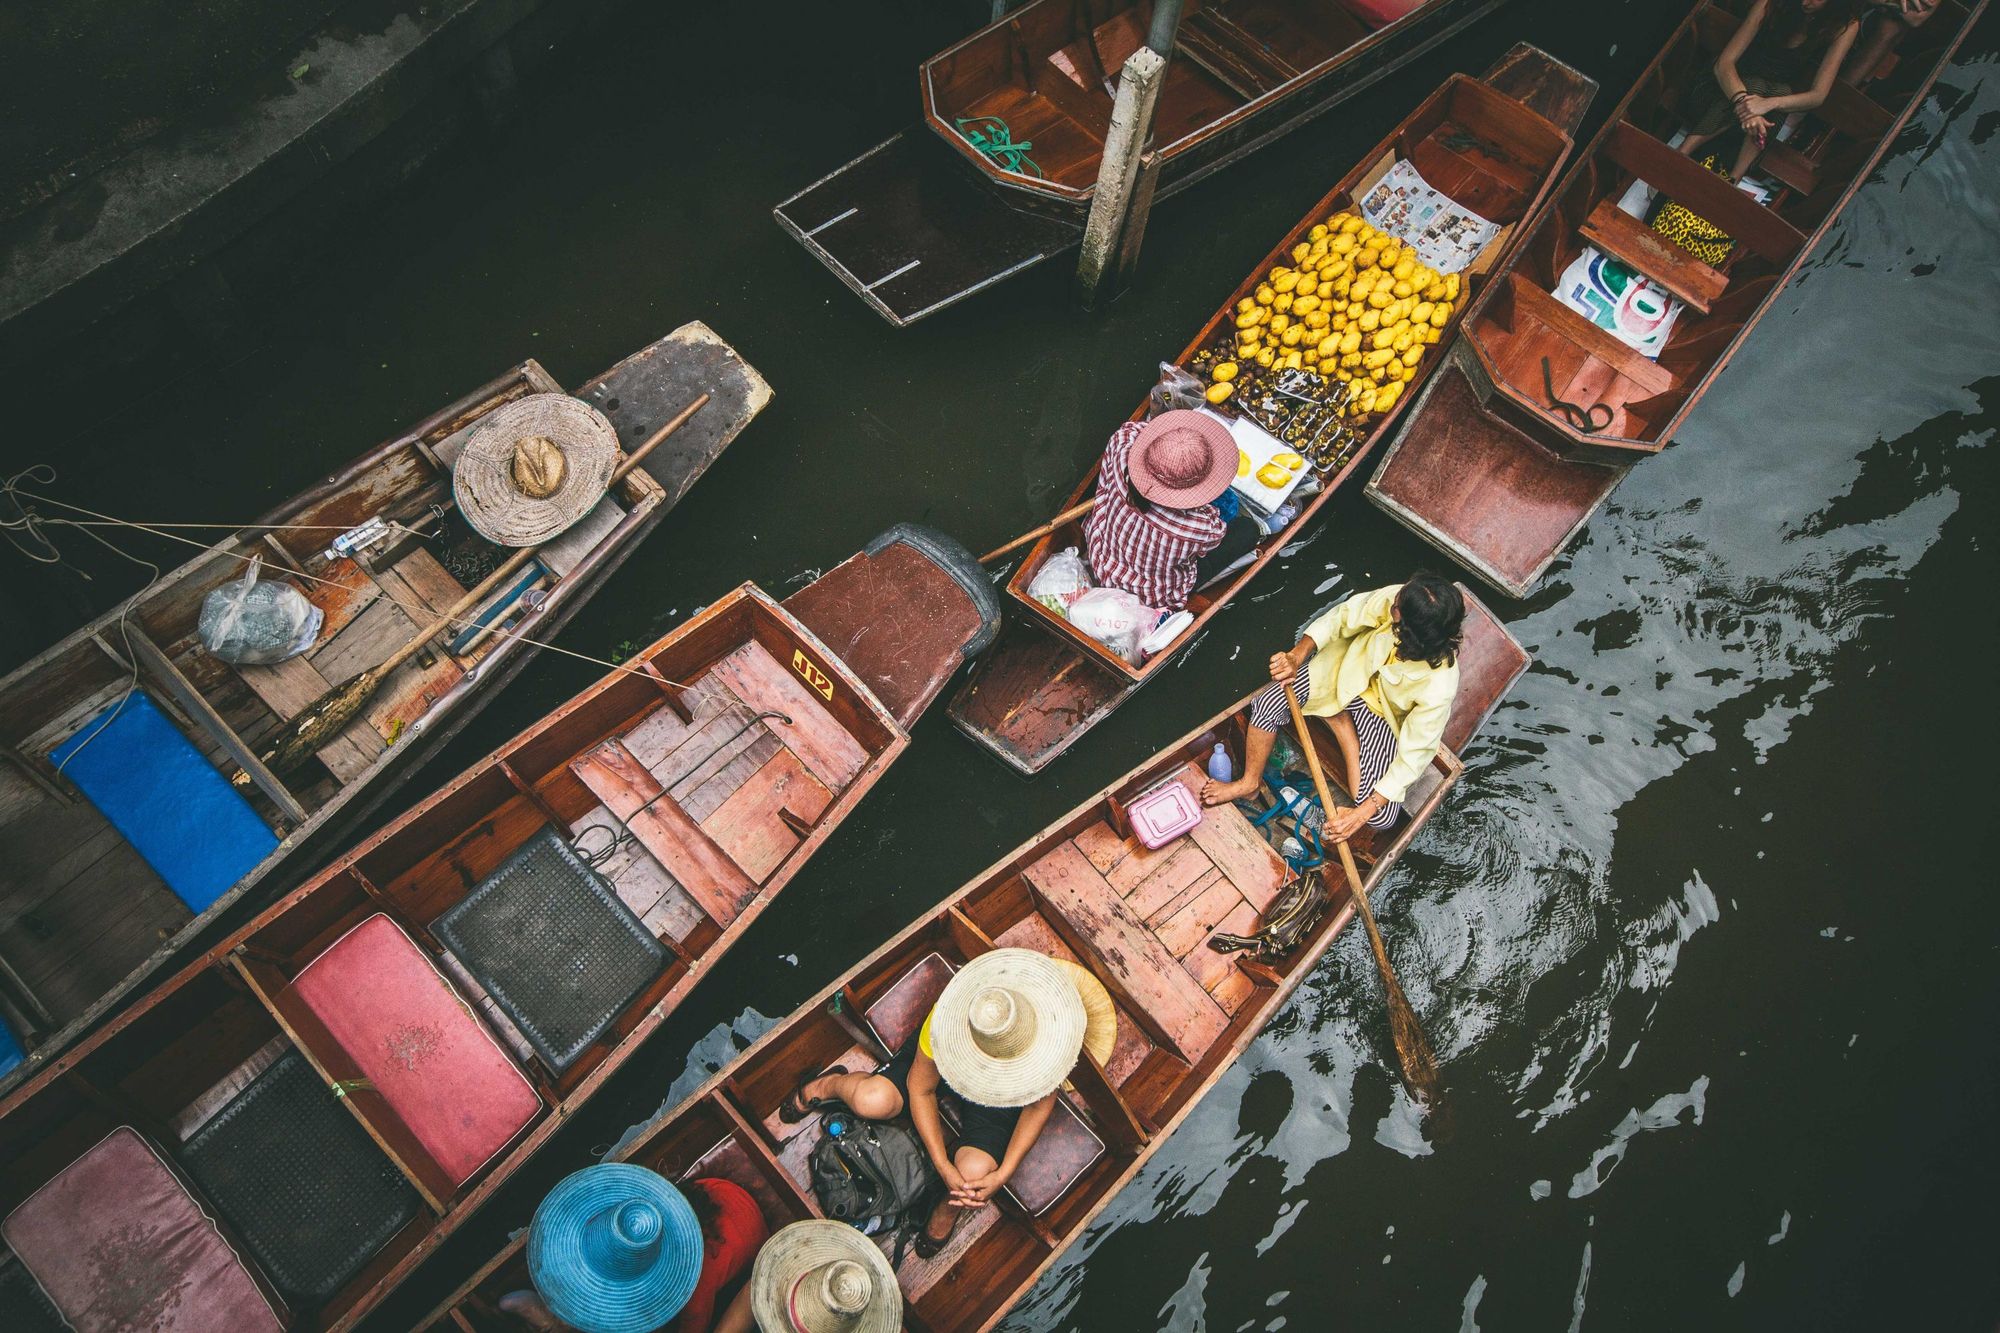 Detailed guide to visit Damnoen Saduak floating market in Bangkok